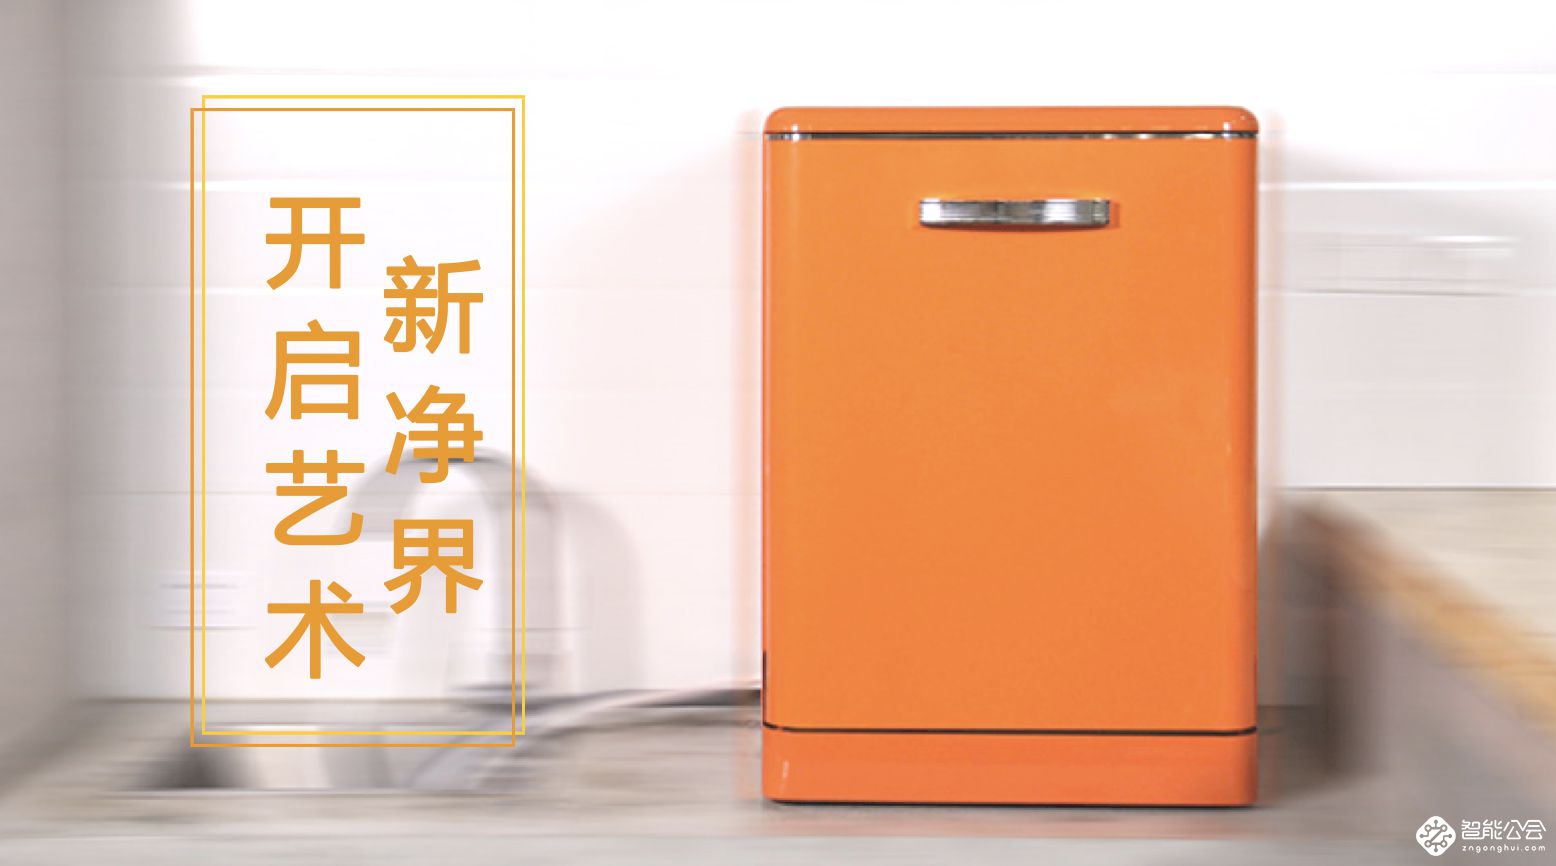 大艺术生活家 东芝全智能洗碗机Z3打造厨房复古艺术净界 智能公会